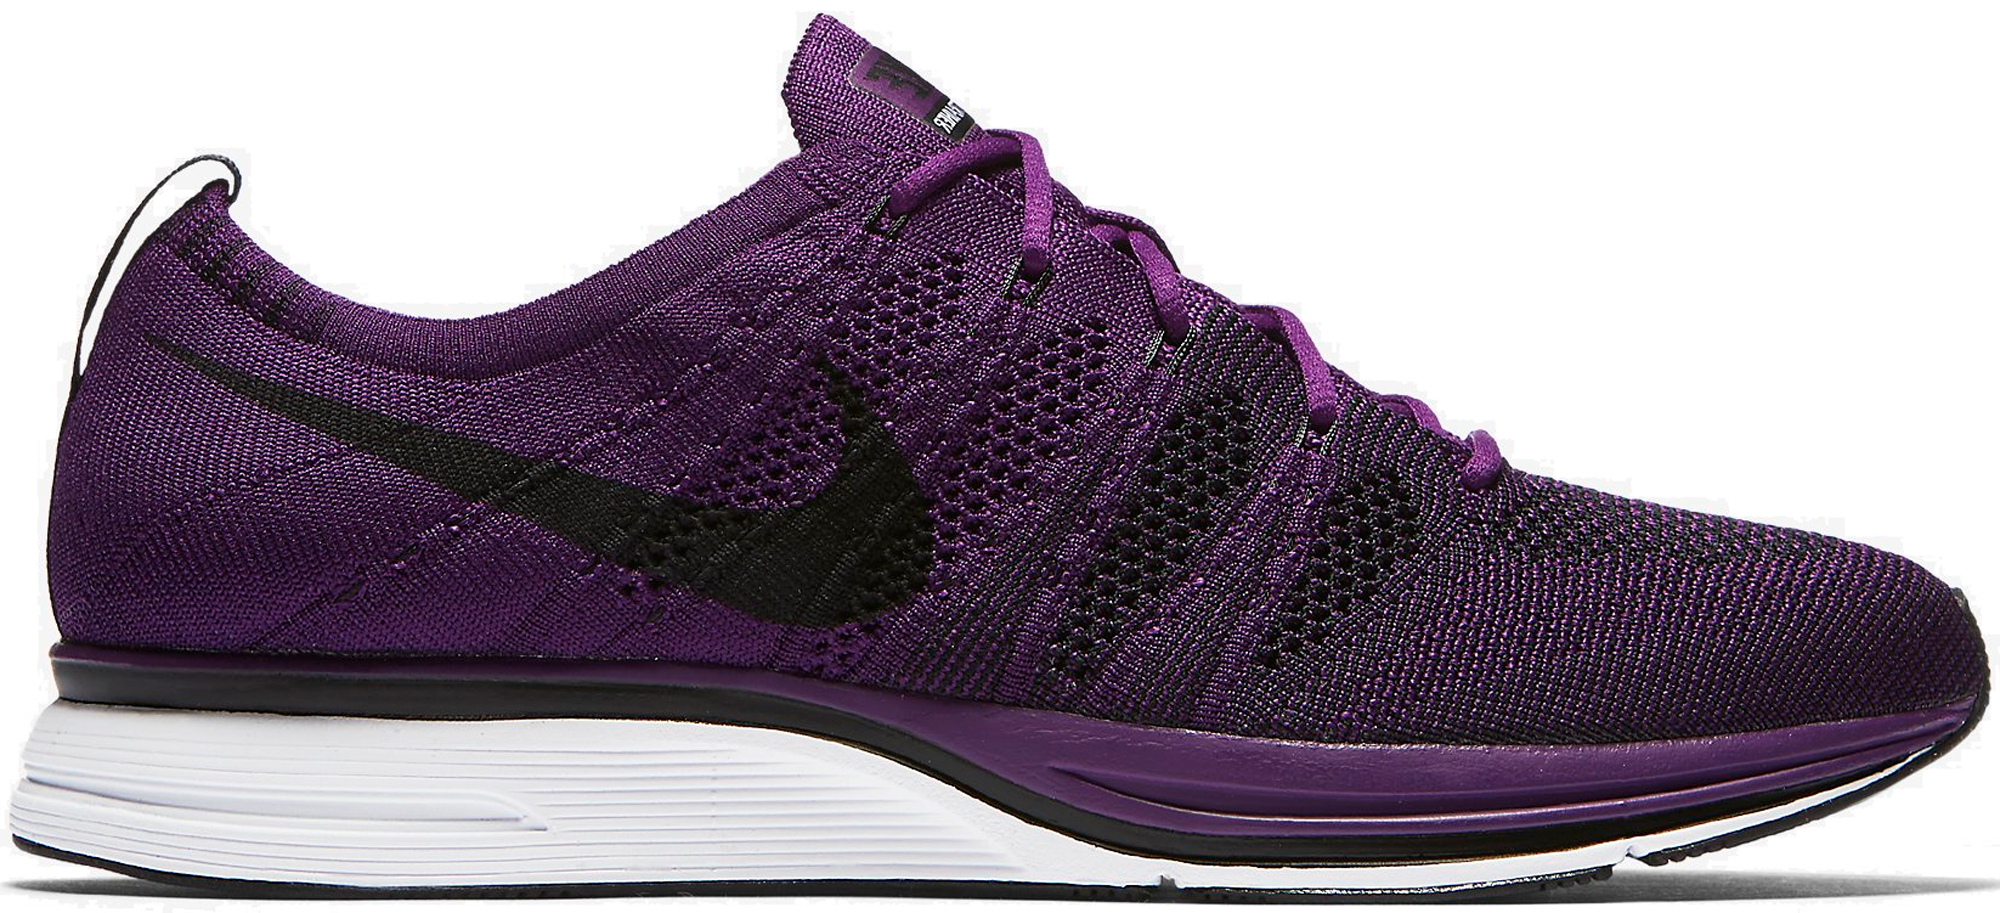 purple nike flyknit shoes